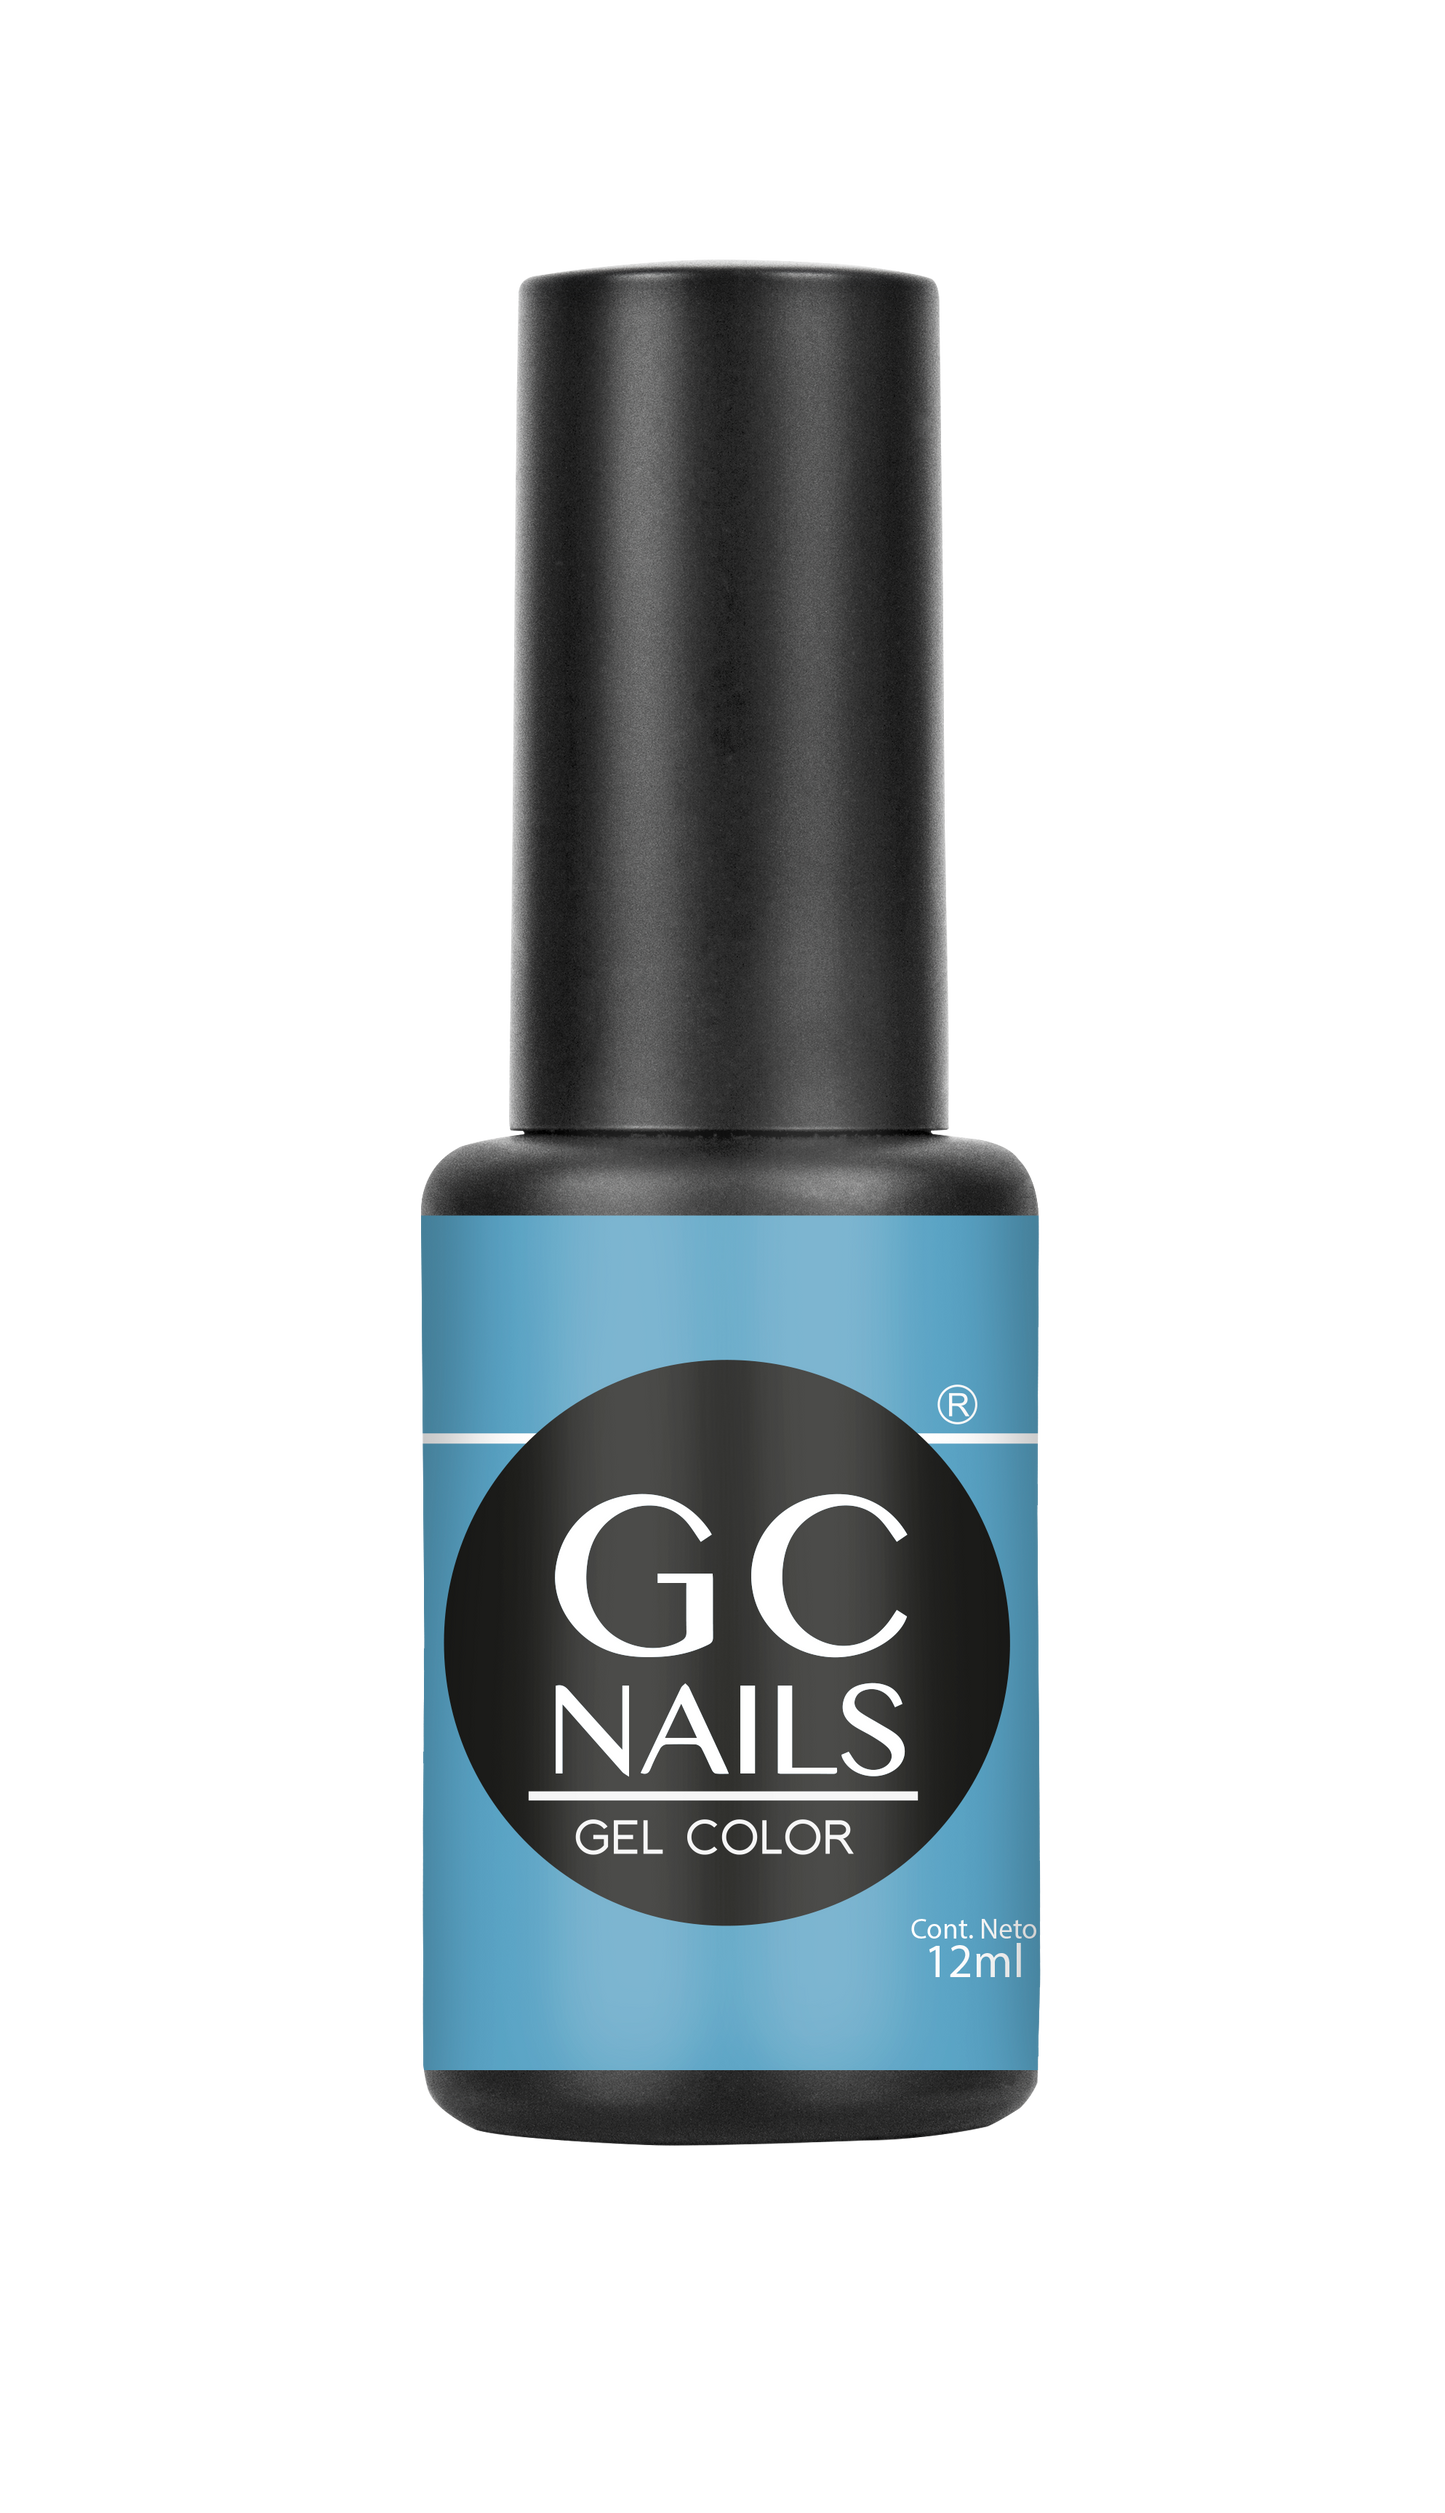 GC nails bel-color 12ml MEDITERRANEO 95